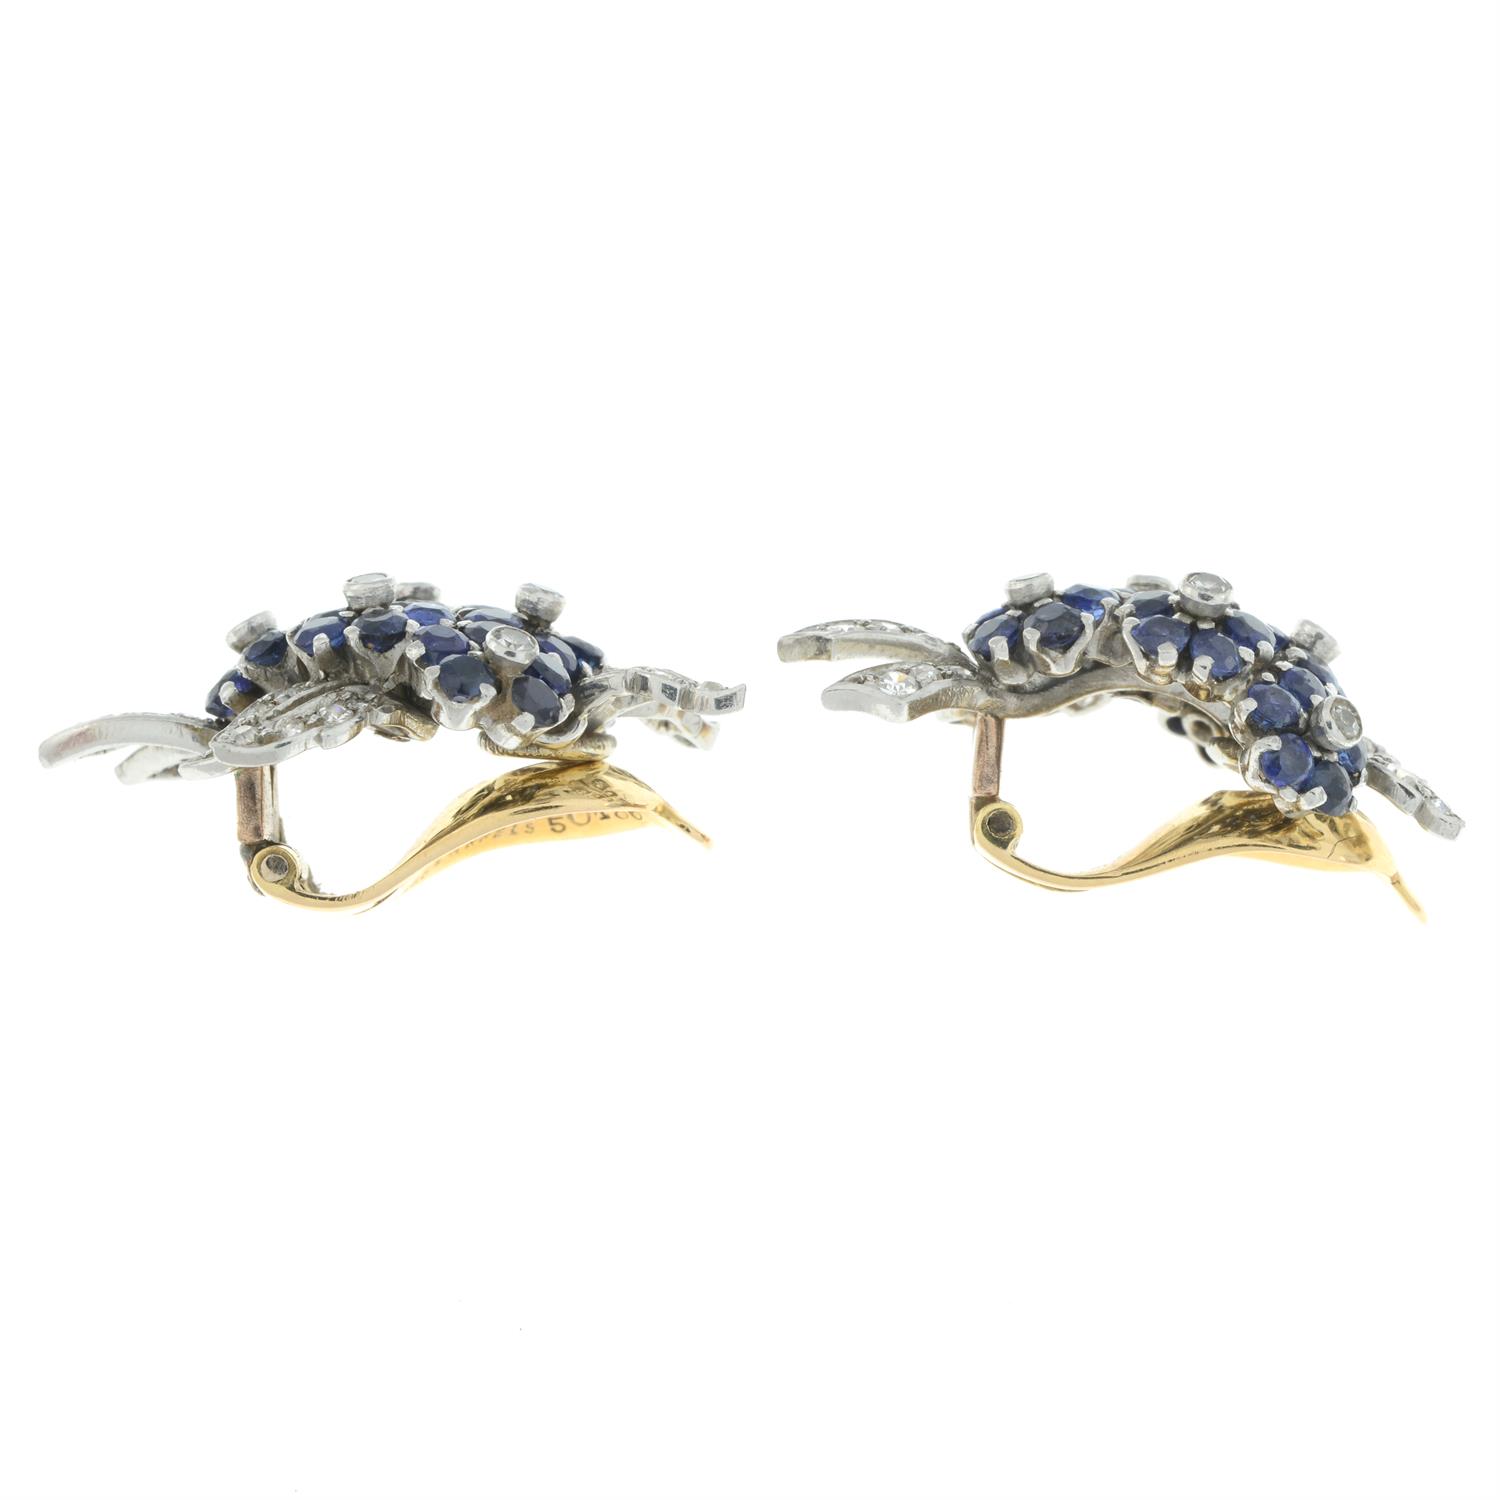 Diamond and sapphire earrings, by Van Cleef & Arpels - Image 4 of 4